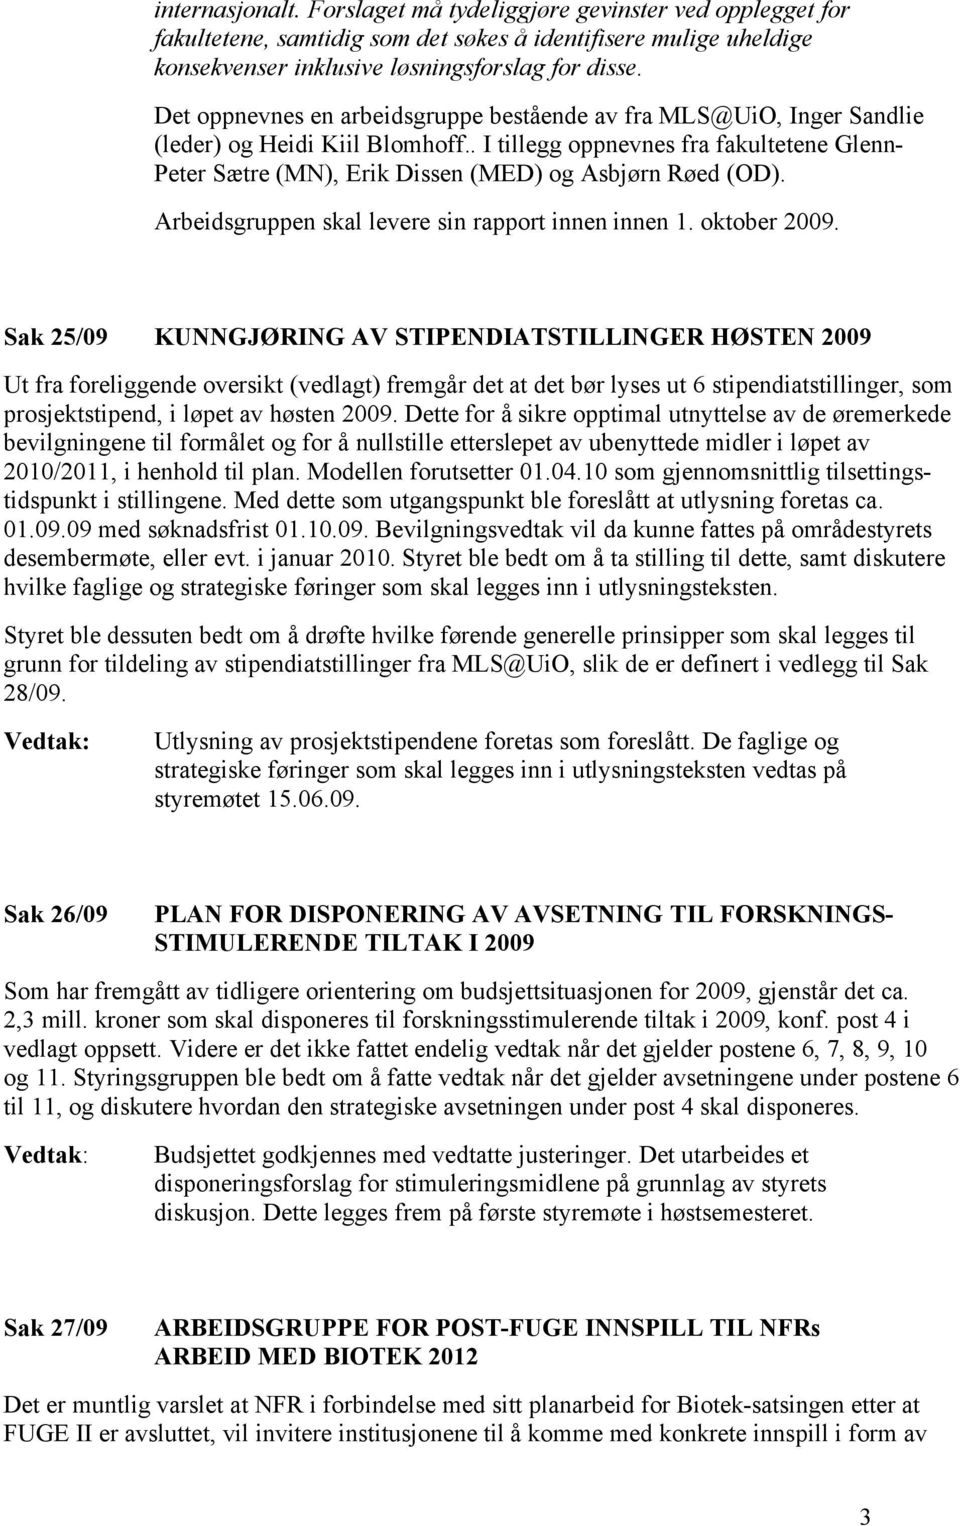 . I tillegg oppnevnes fra fakultetene Glenn- Peter Sætre (MN), Erik Dissen (MED) og Asbjørn Røed (OD). Arbeidsgruppen skal levere sin rapport innen innen 1. oktober 2009.